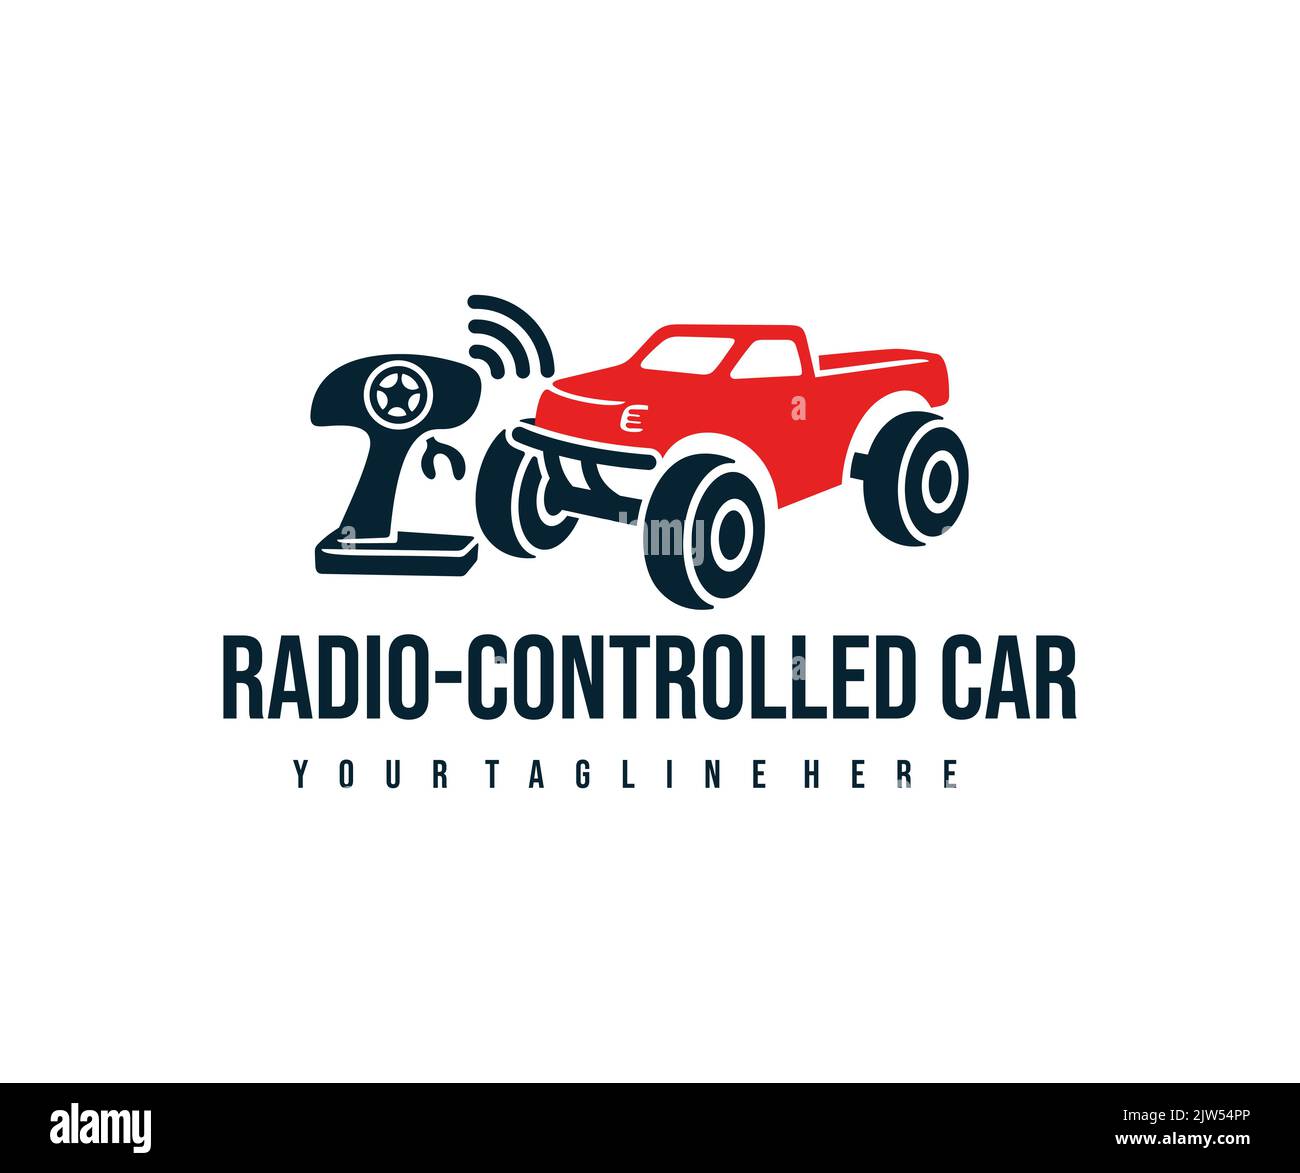 Auto radiocomandata con joystick di controllo, l'auto giocattolo con telecomando, logo. Passeggino elettrico, giocattolo, radiocomando auto, design vettoriale Illustrazione Vettoriale